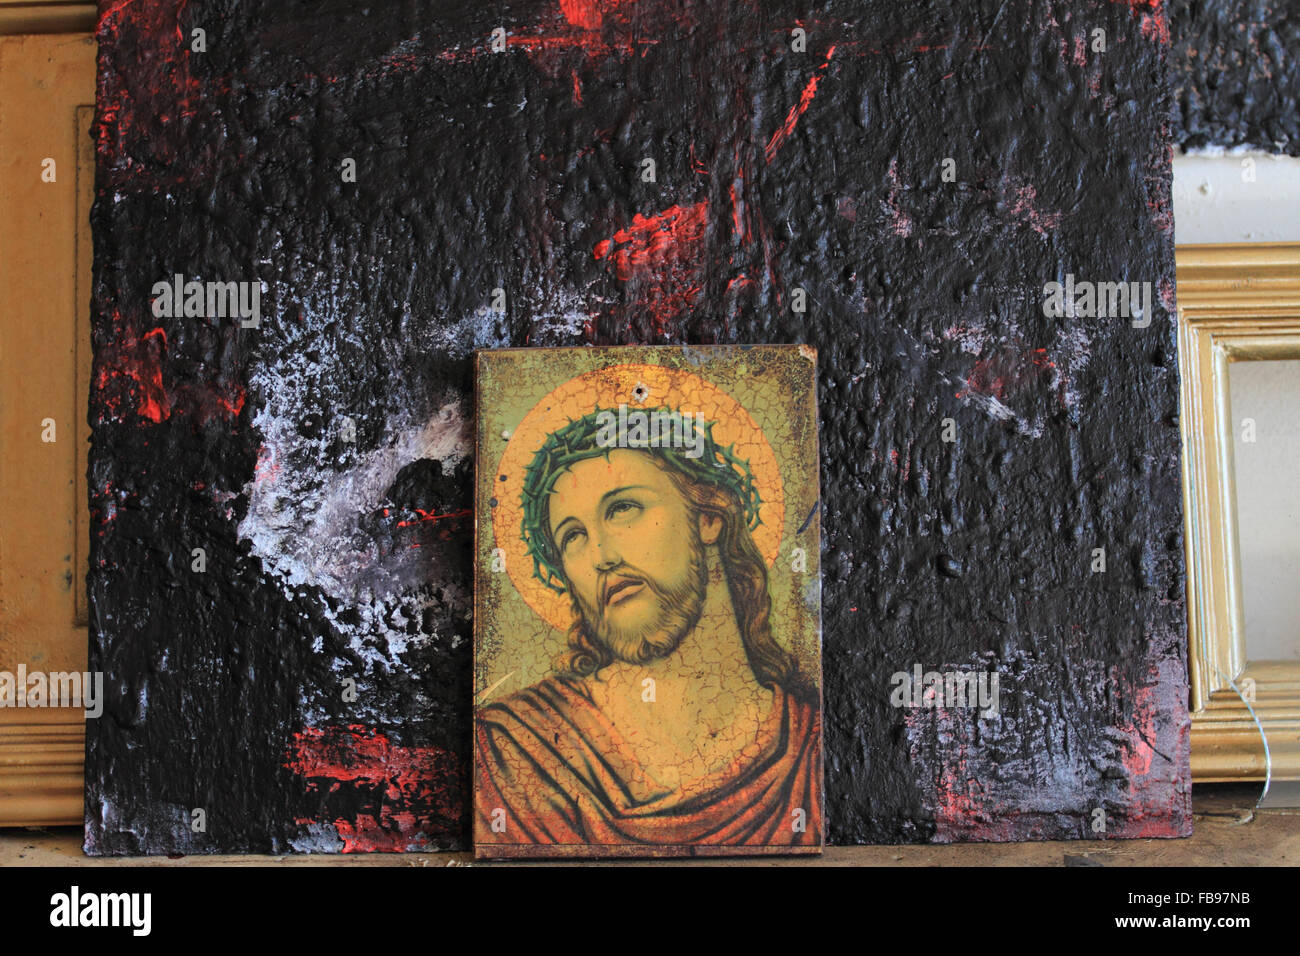 Jesus Christus Porträt, gekrönt von Dornen, Bild vor dunklem Hintergrund, Norwich, Norfolk, Großbritannien Stockfoto